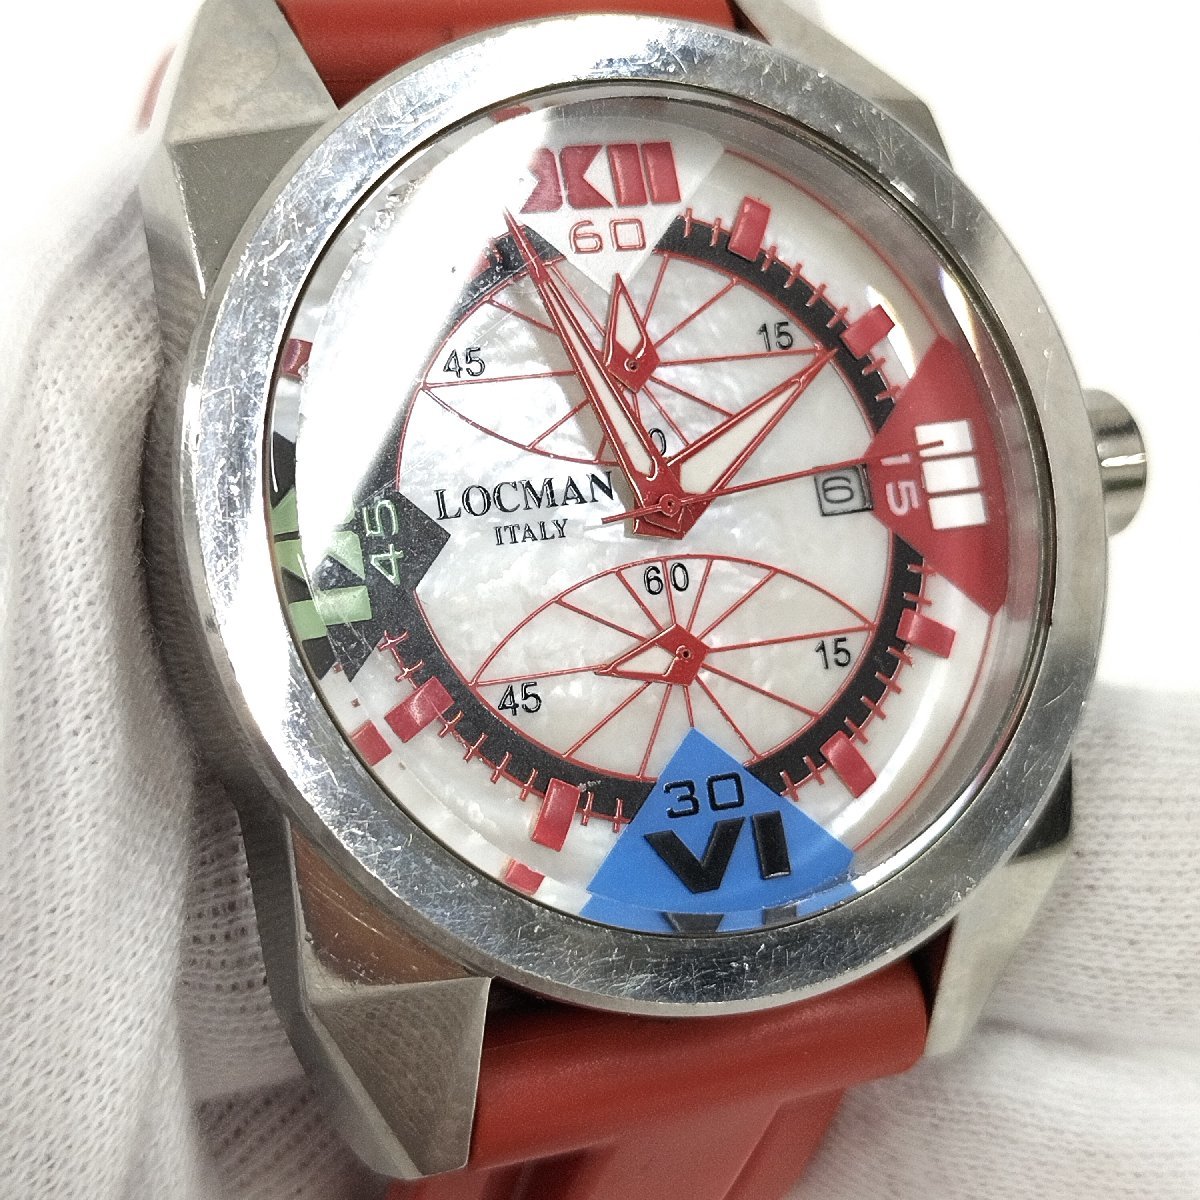 ●現状品 LOCMAN ロックマン R.160 クロノグラフ メンズ腕時計 シェル文字盤 クォーツ デイト レッド/赤 中古[ne]u363_画像8